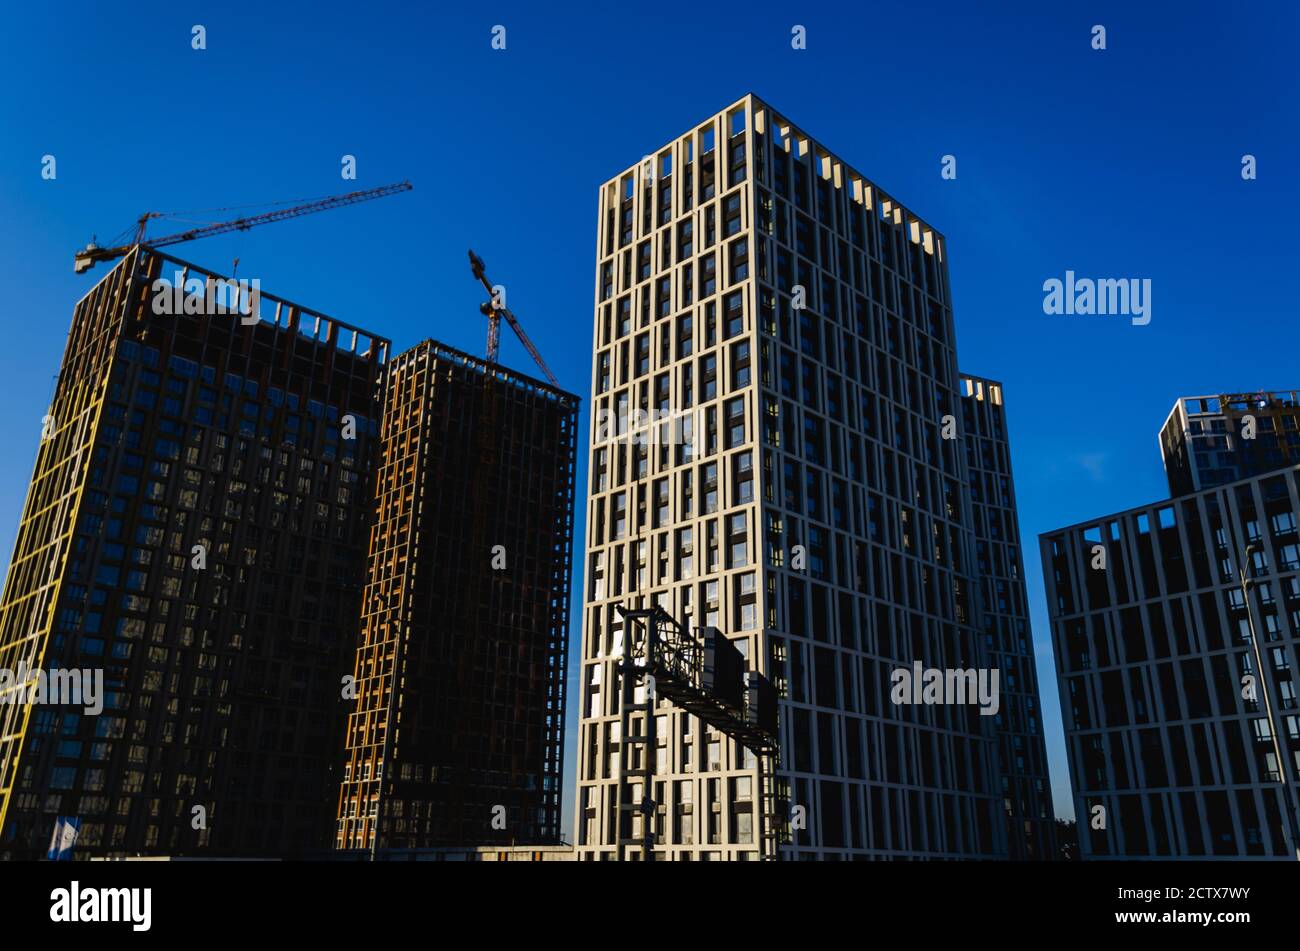 Wohnungsentwicklung. Moderne Hochhäuser im Bau und Kräne vor dem klaren blauen Himmel. Städtischer Hintergrund. Konzept der Zersiedelung Stockfoto